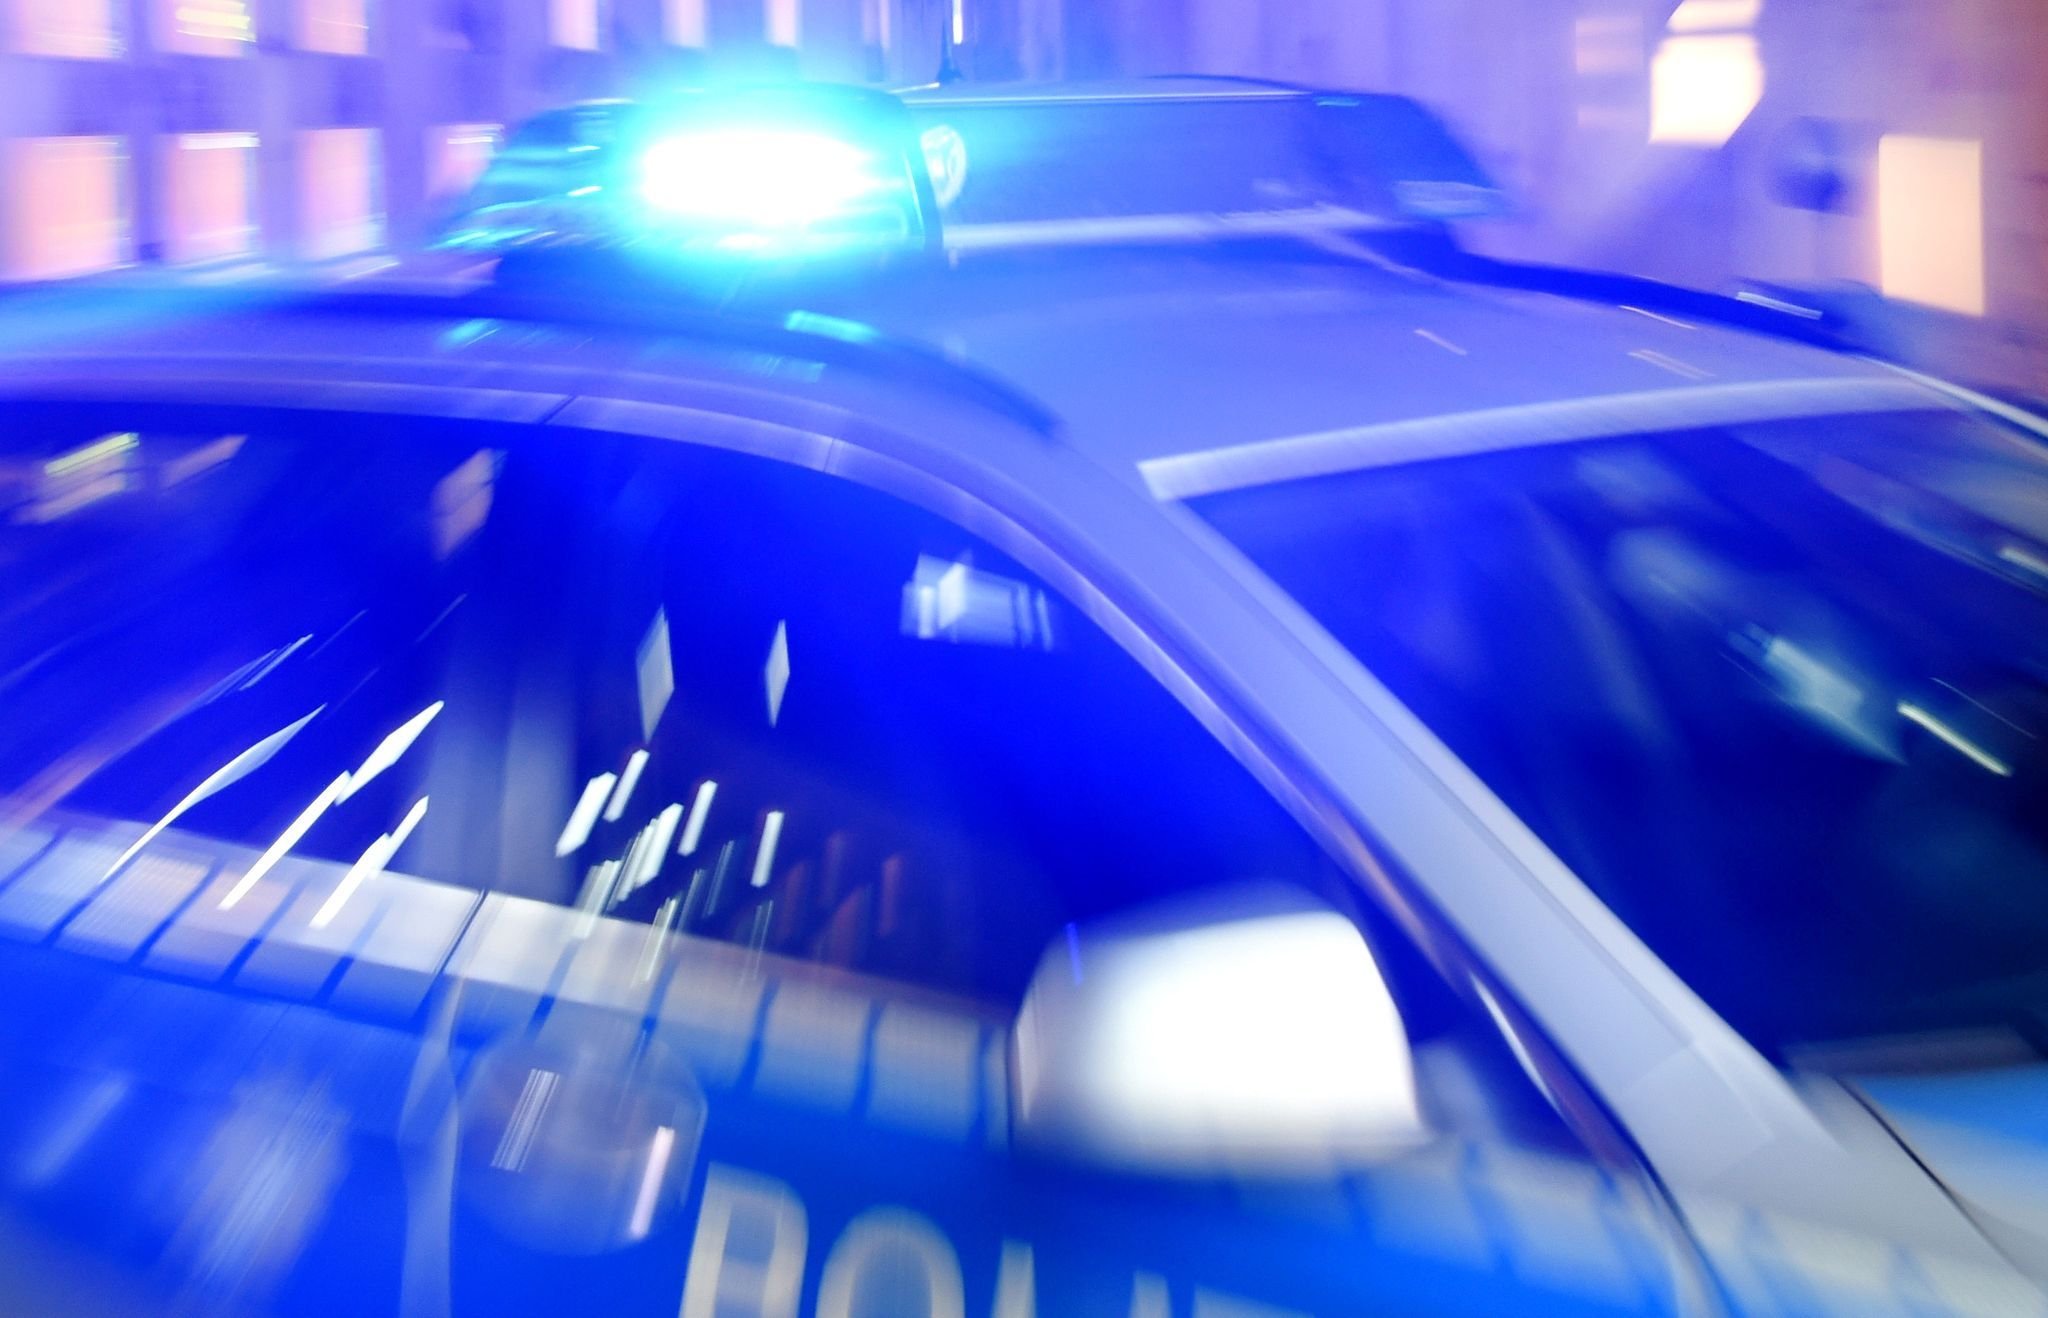 Gallin: Polizei erwischt Autofahrer mit Drogen - Festnahme